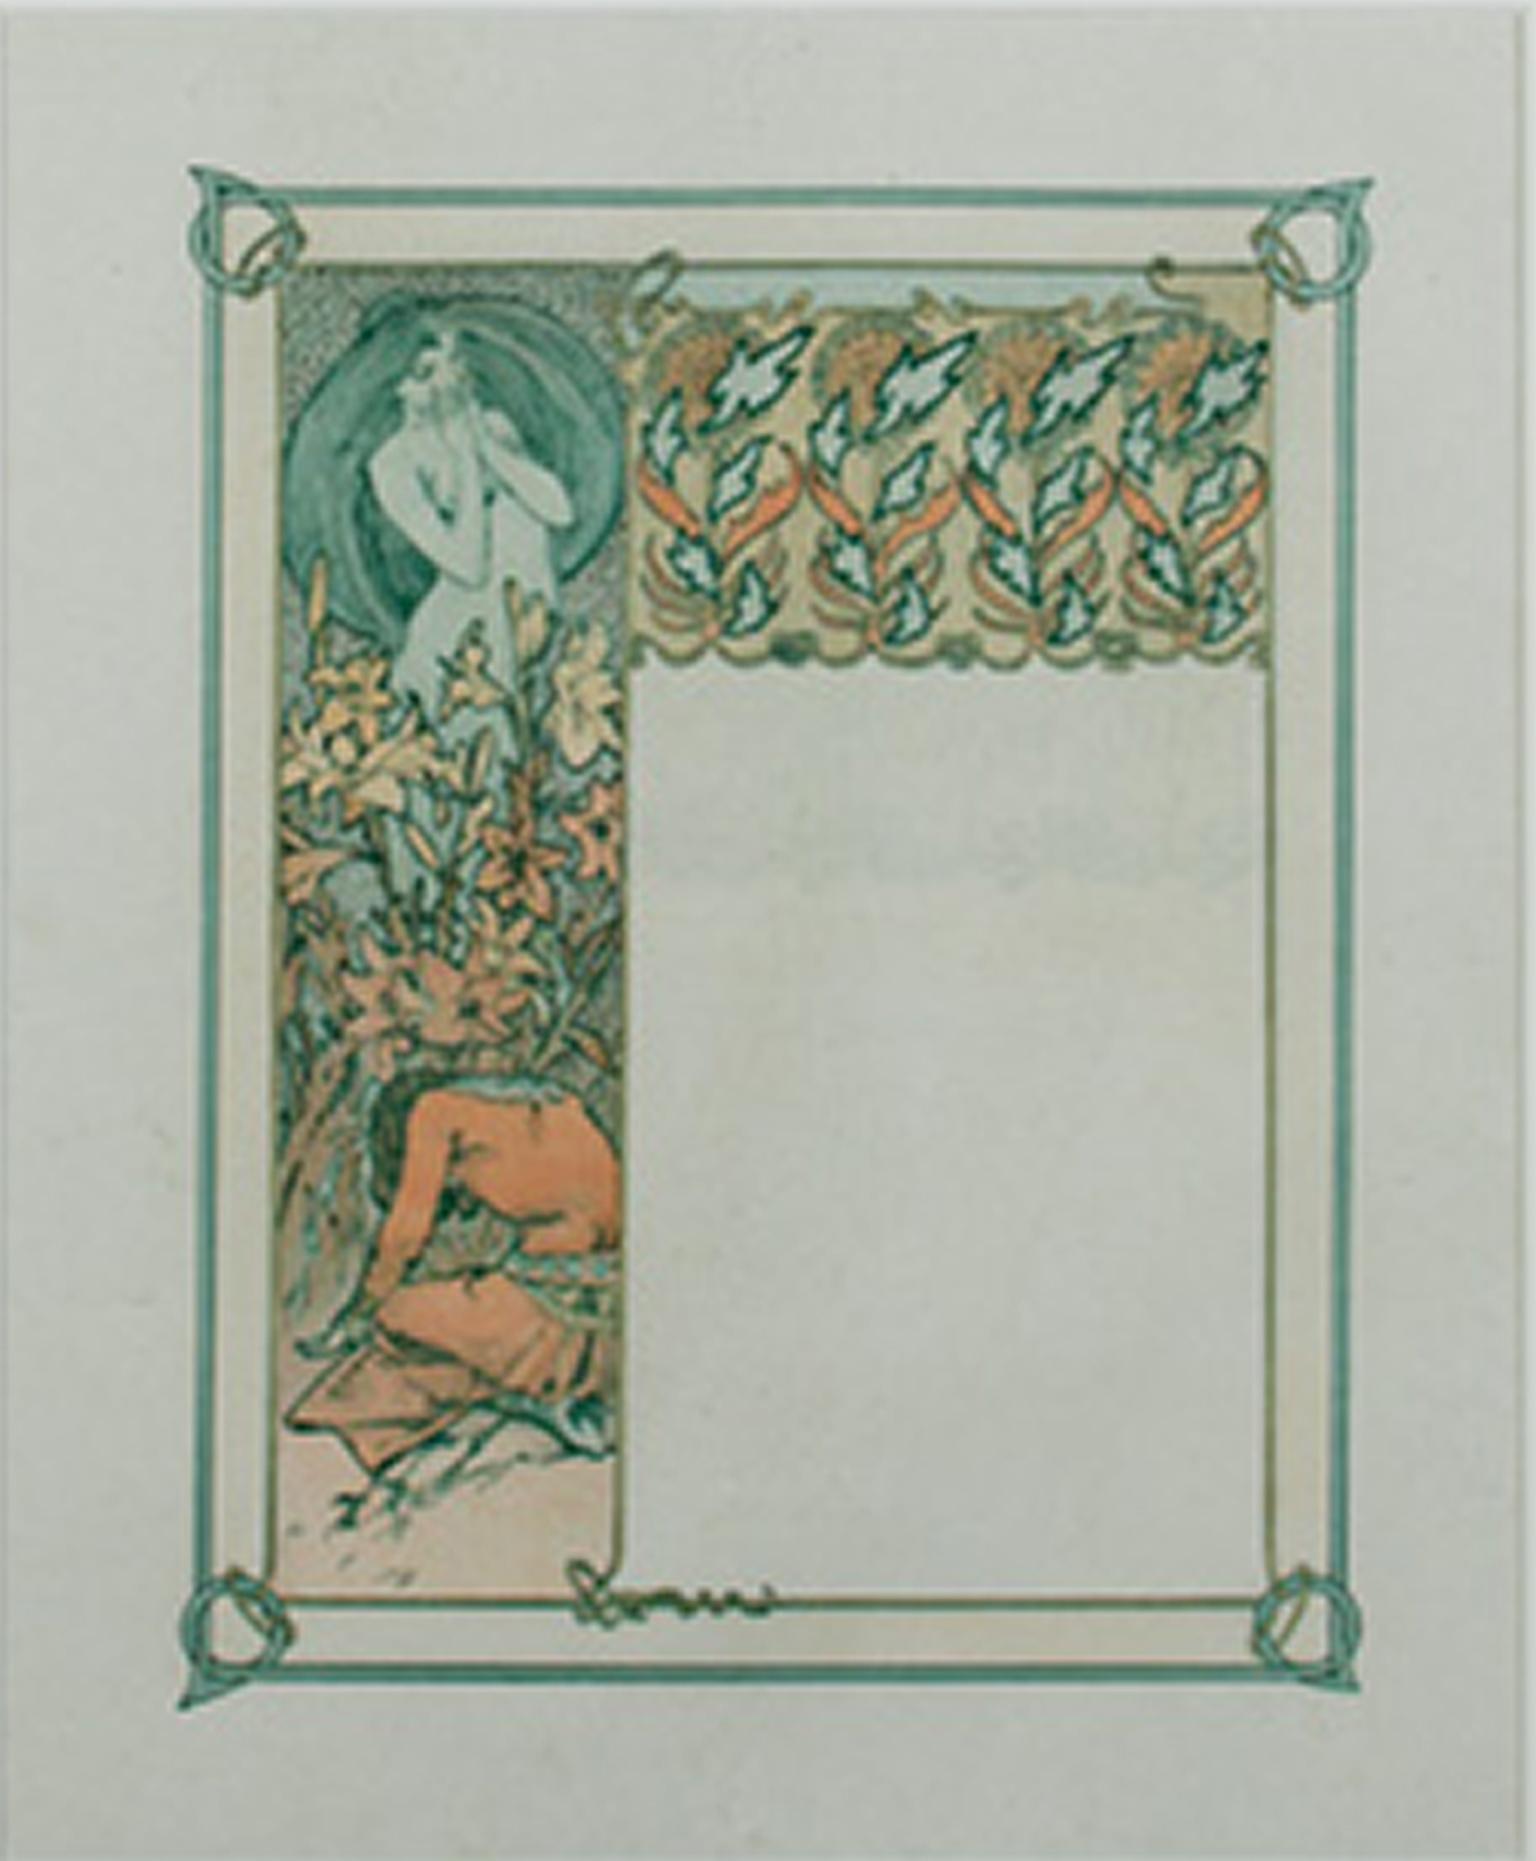 Farblithographie des späten 19. Jahrhunderts, Jugendstil, Blumenpflanzgefäße, Figuren, blau-orange – Print von Alphonse Mucha